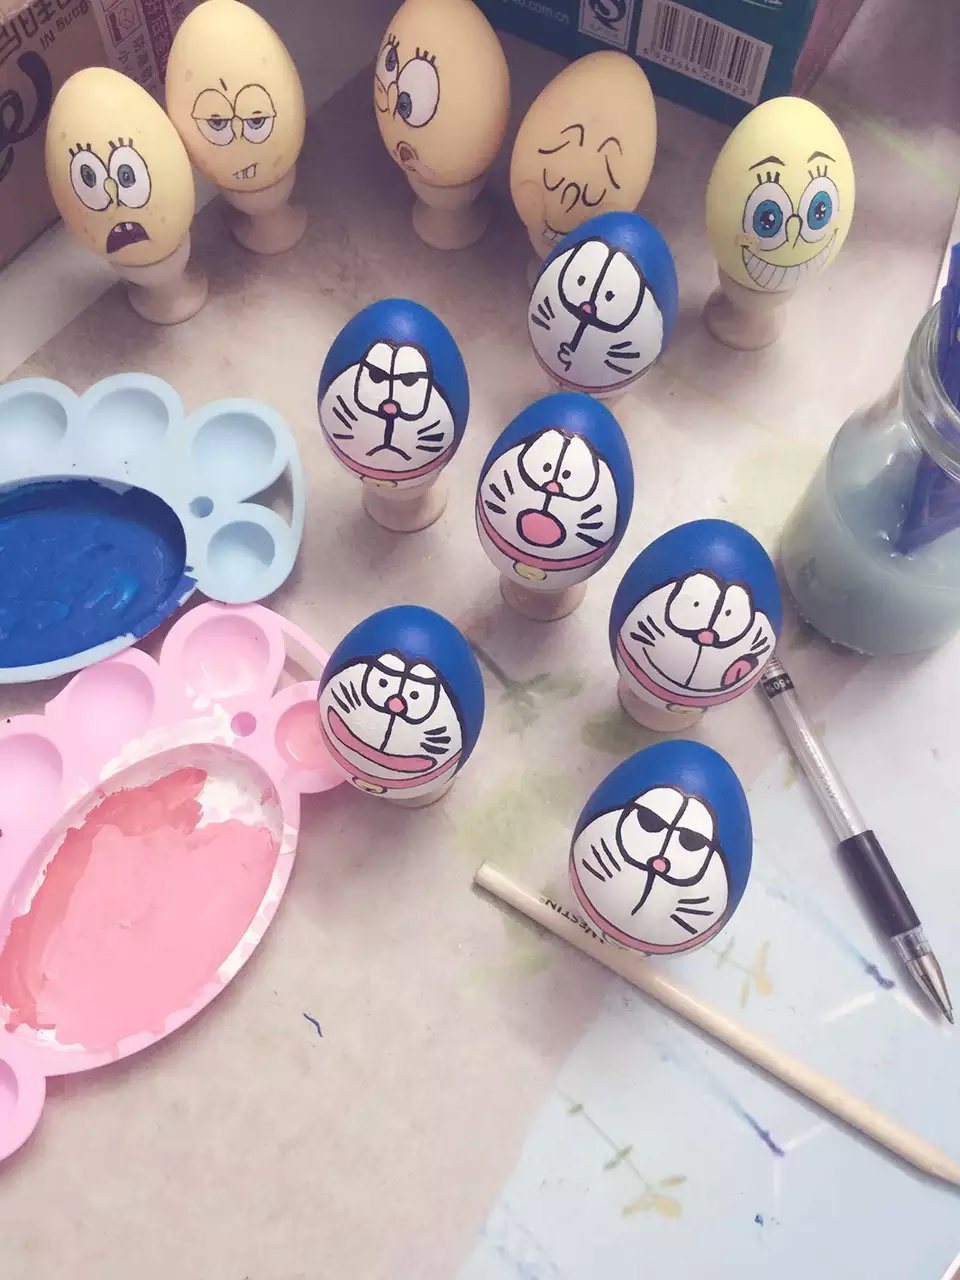 彩绘鸡蛋中国风图片